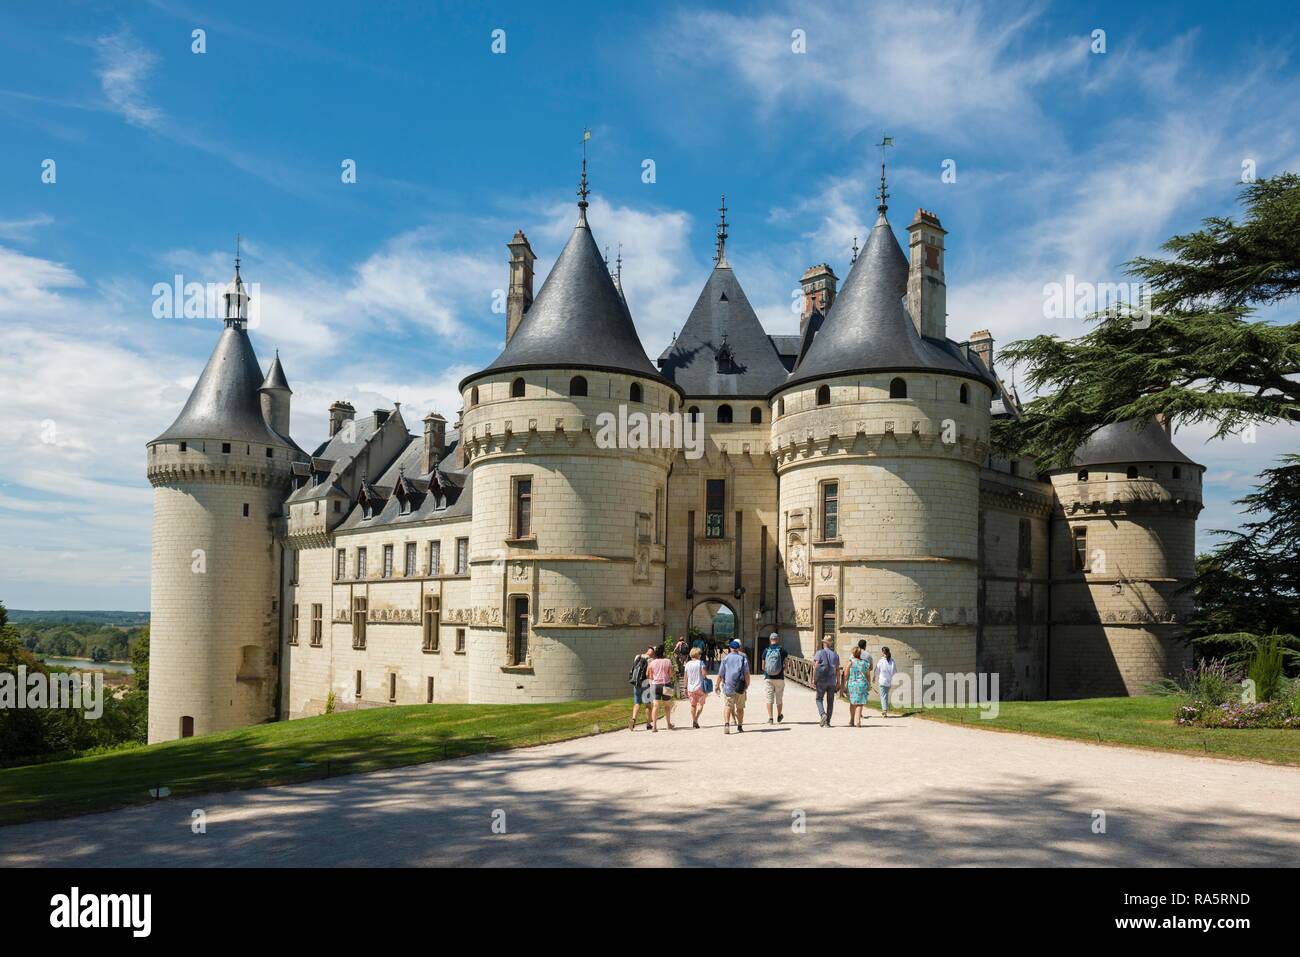 Chaumont Castle Château de Chaumont, Chaumont-sur-Loire, Loire, Département Loir-et-Cher, France Stock Photo